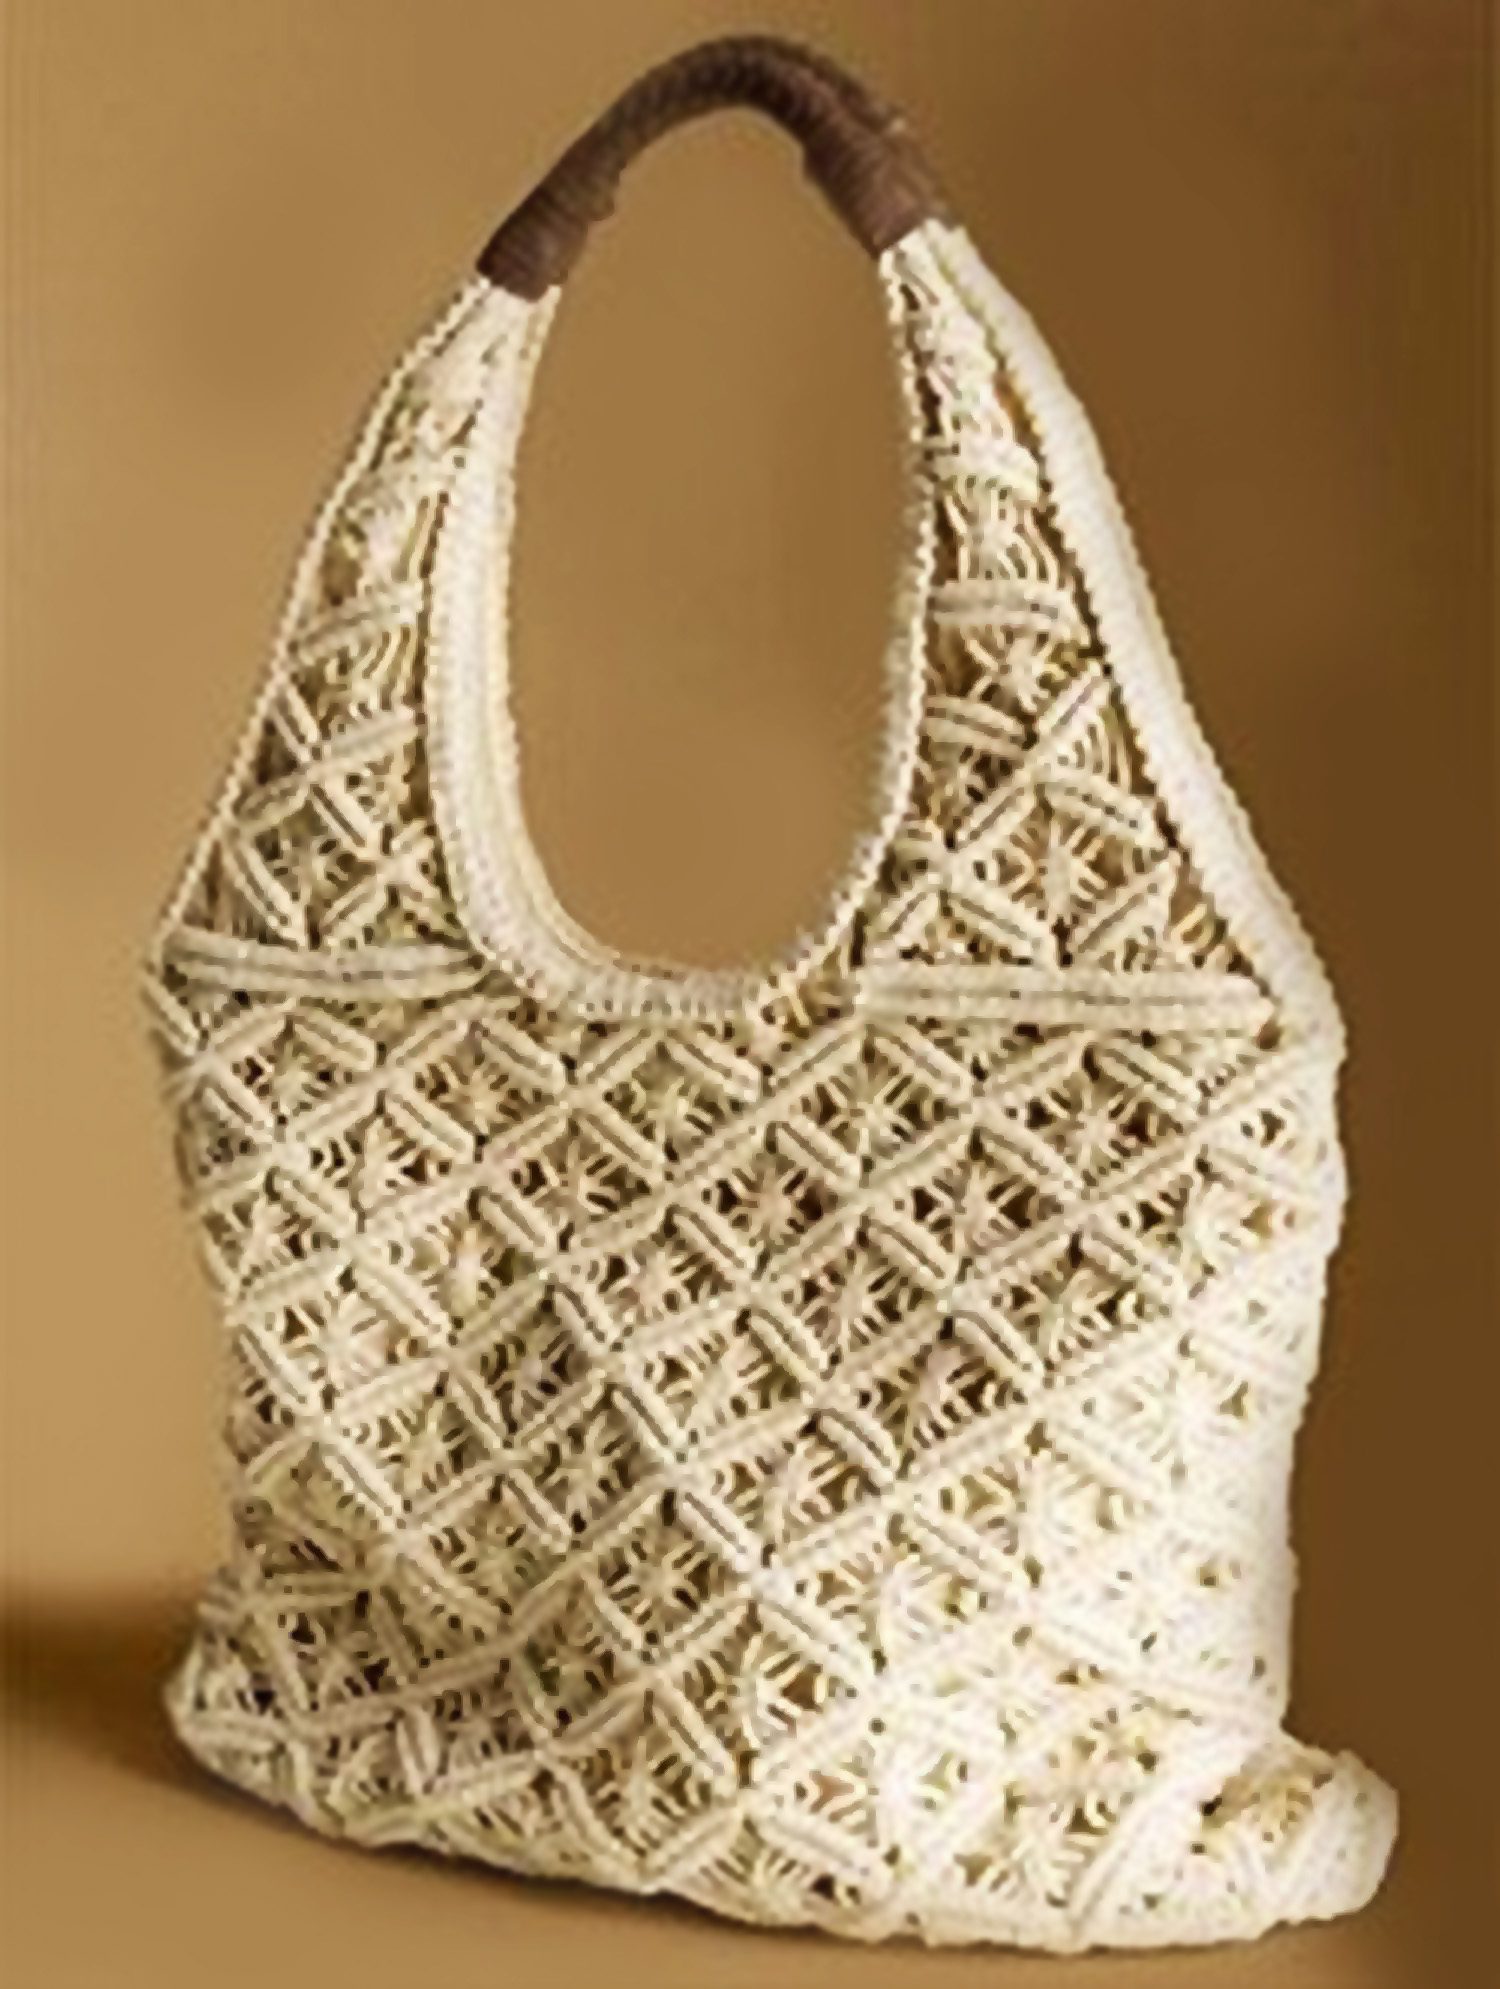 15 Free Crochet Market Bag Patterns (Beginner Friendly!) - FiberArtsy.com